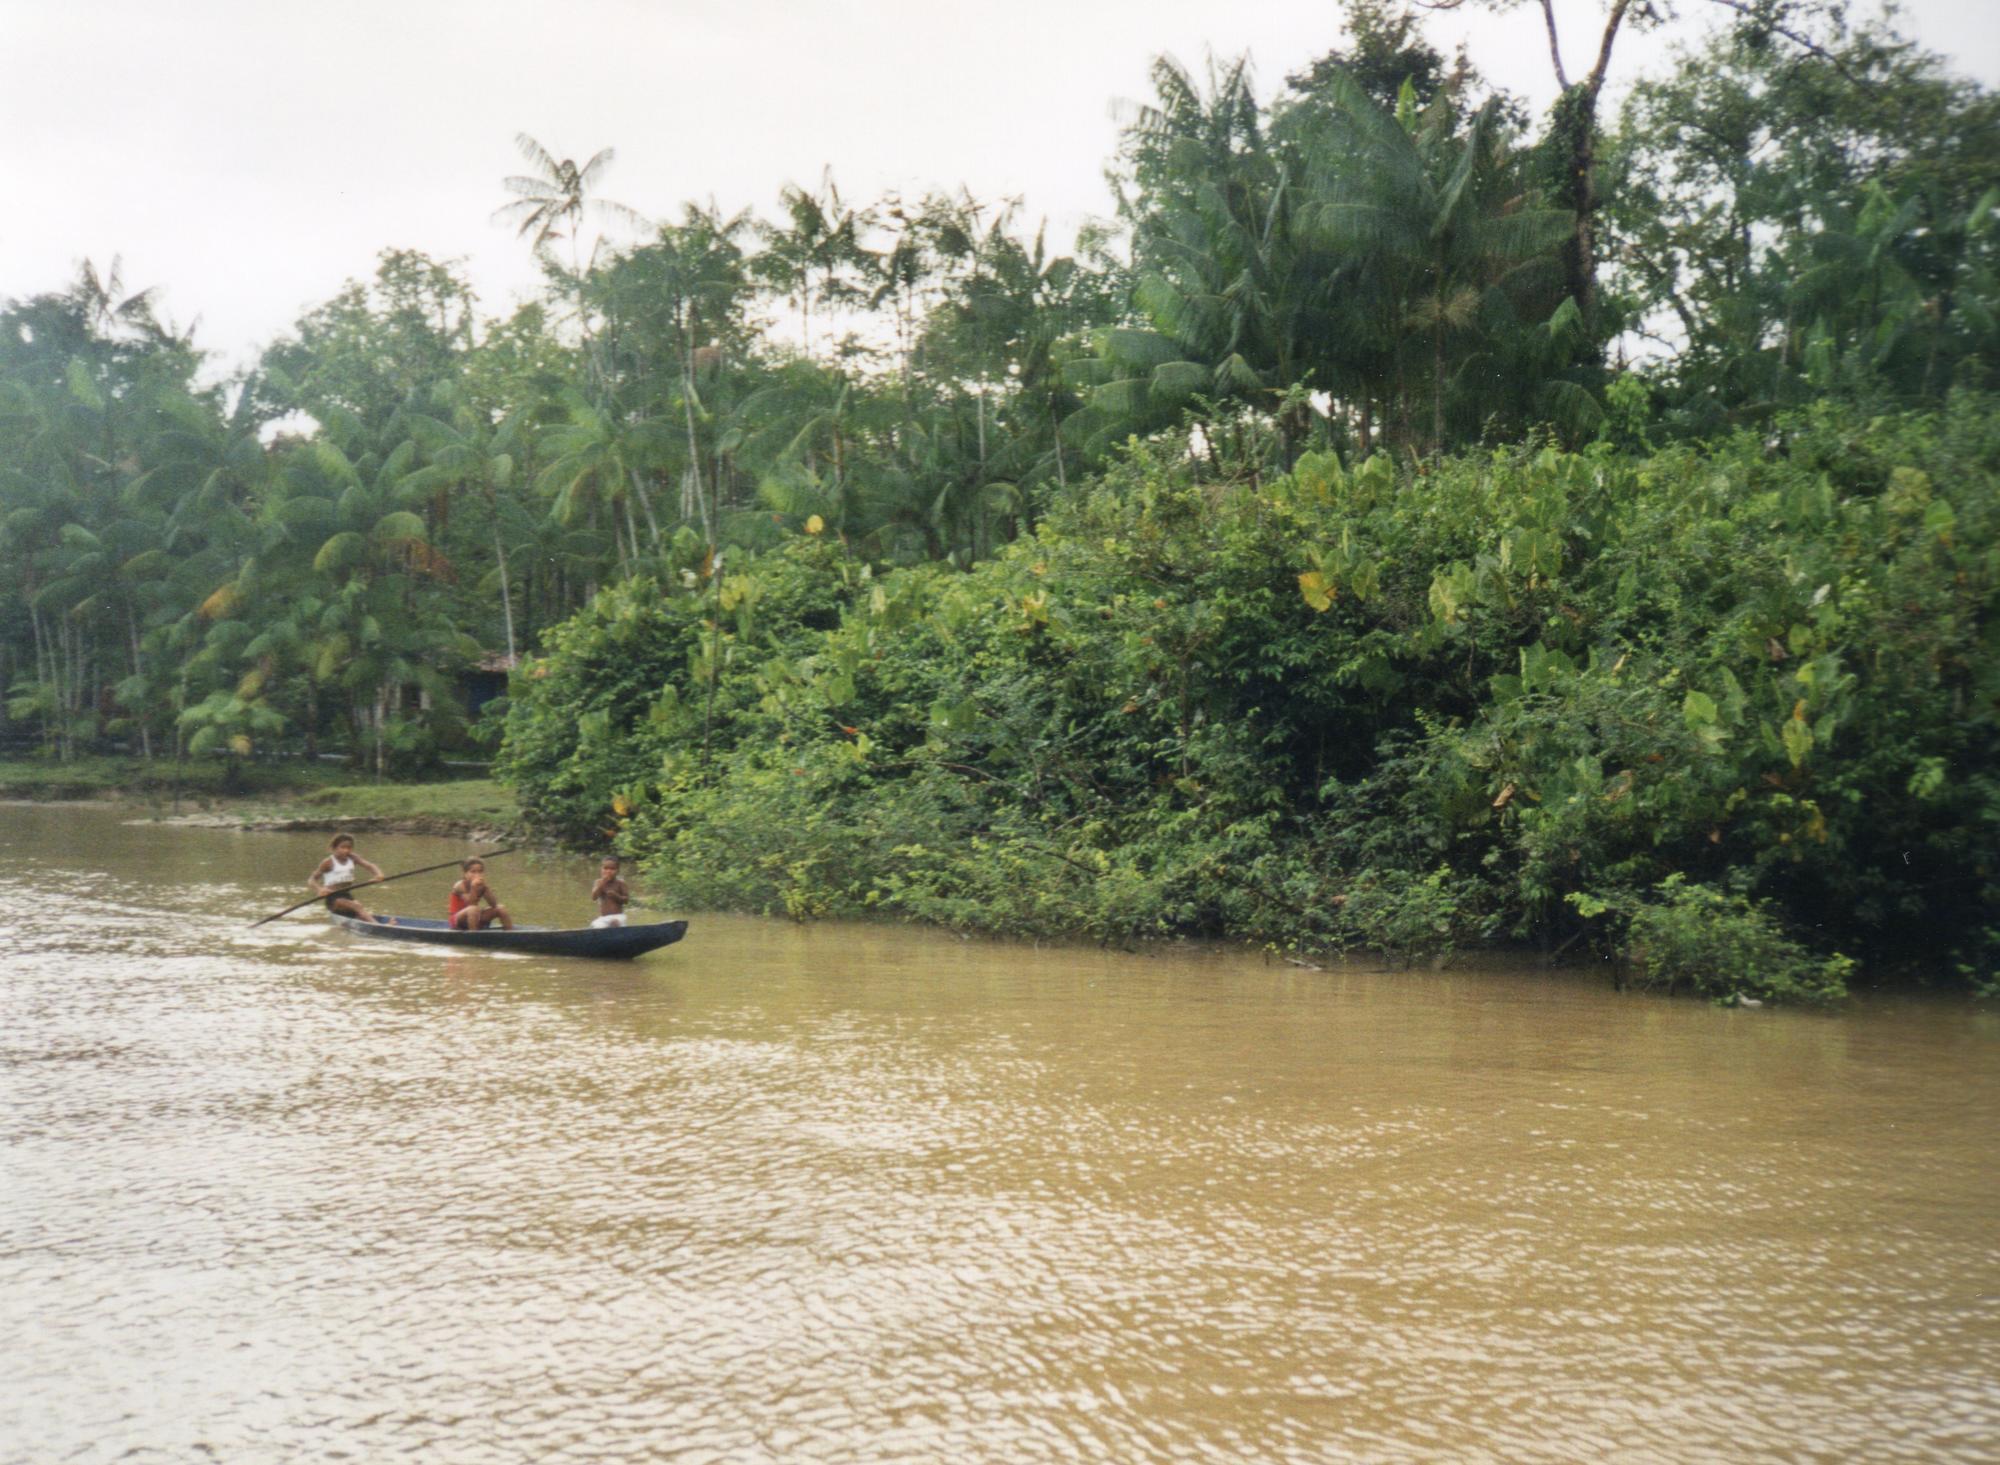 Amazonasüberfahrt